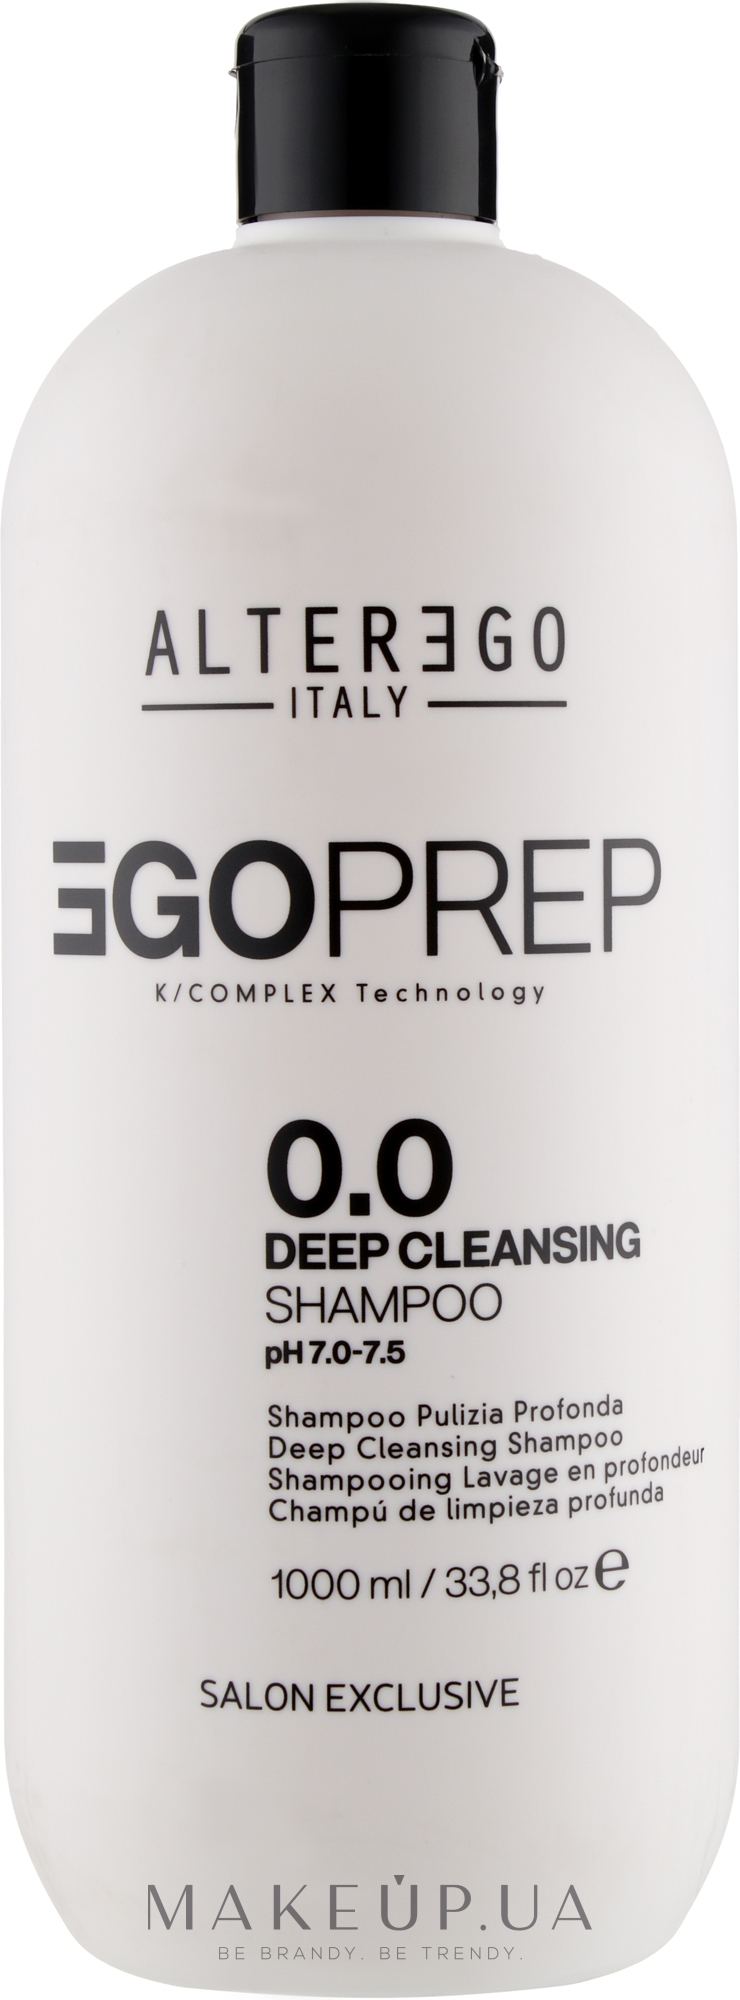 Глибоко очищувальний шампунь для волосся - Alter Ego Egoliss Egoprep 0.0 Deep Cleansing Shampo — фото 1000ml